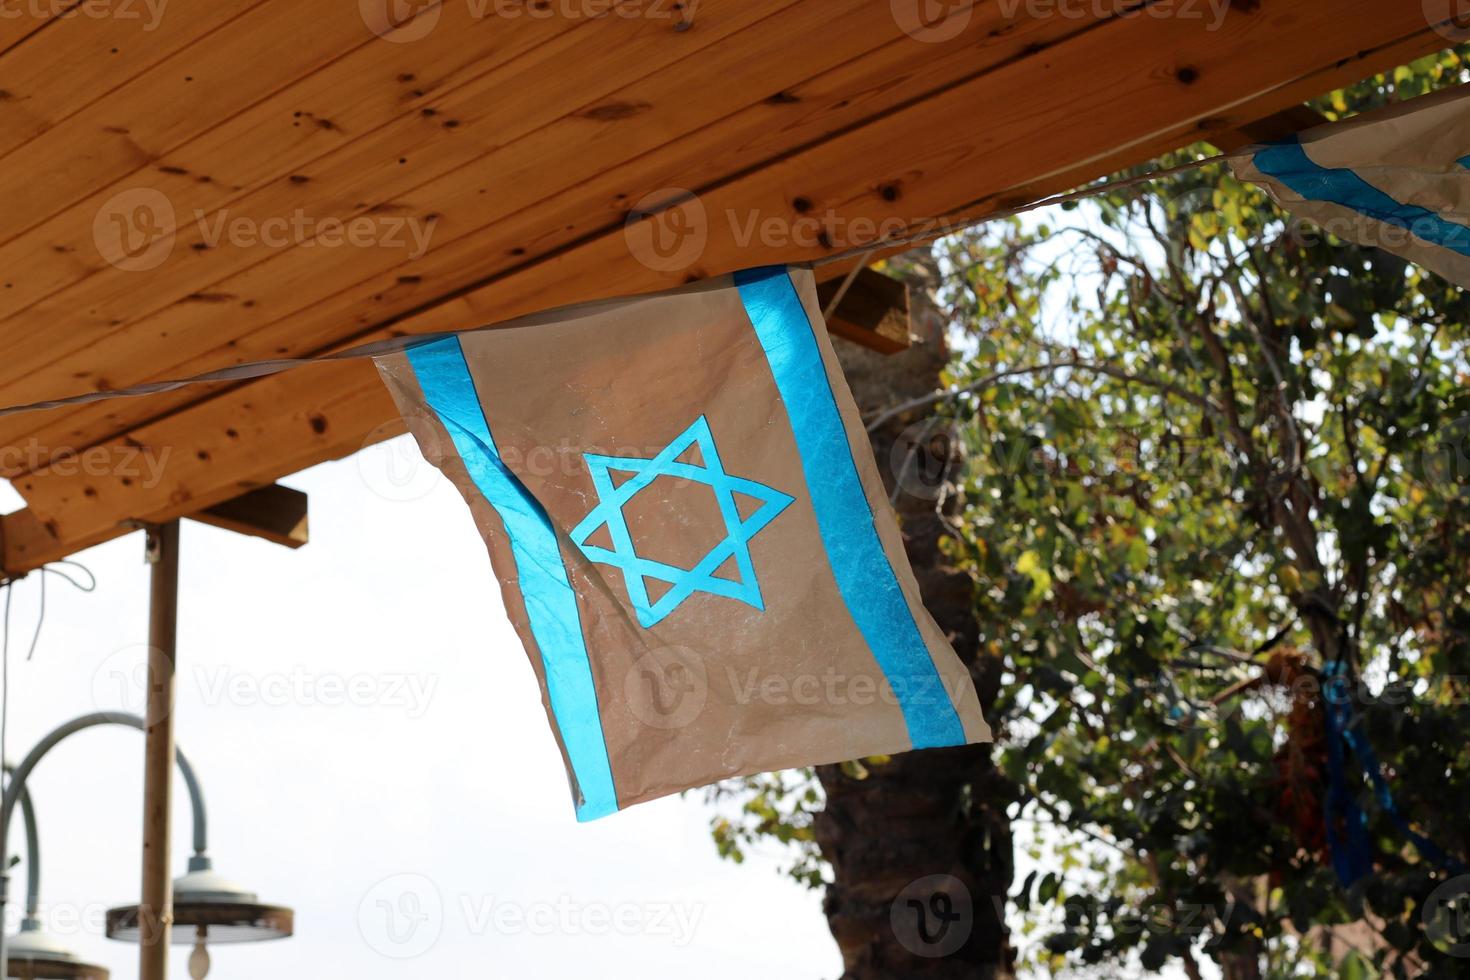 le drapeau israélien bleu et blanc avec l'étoile de david. photo